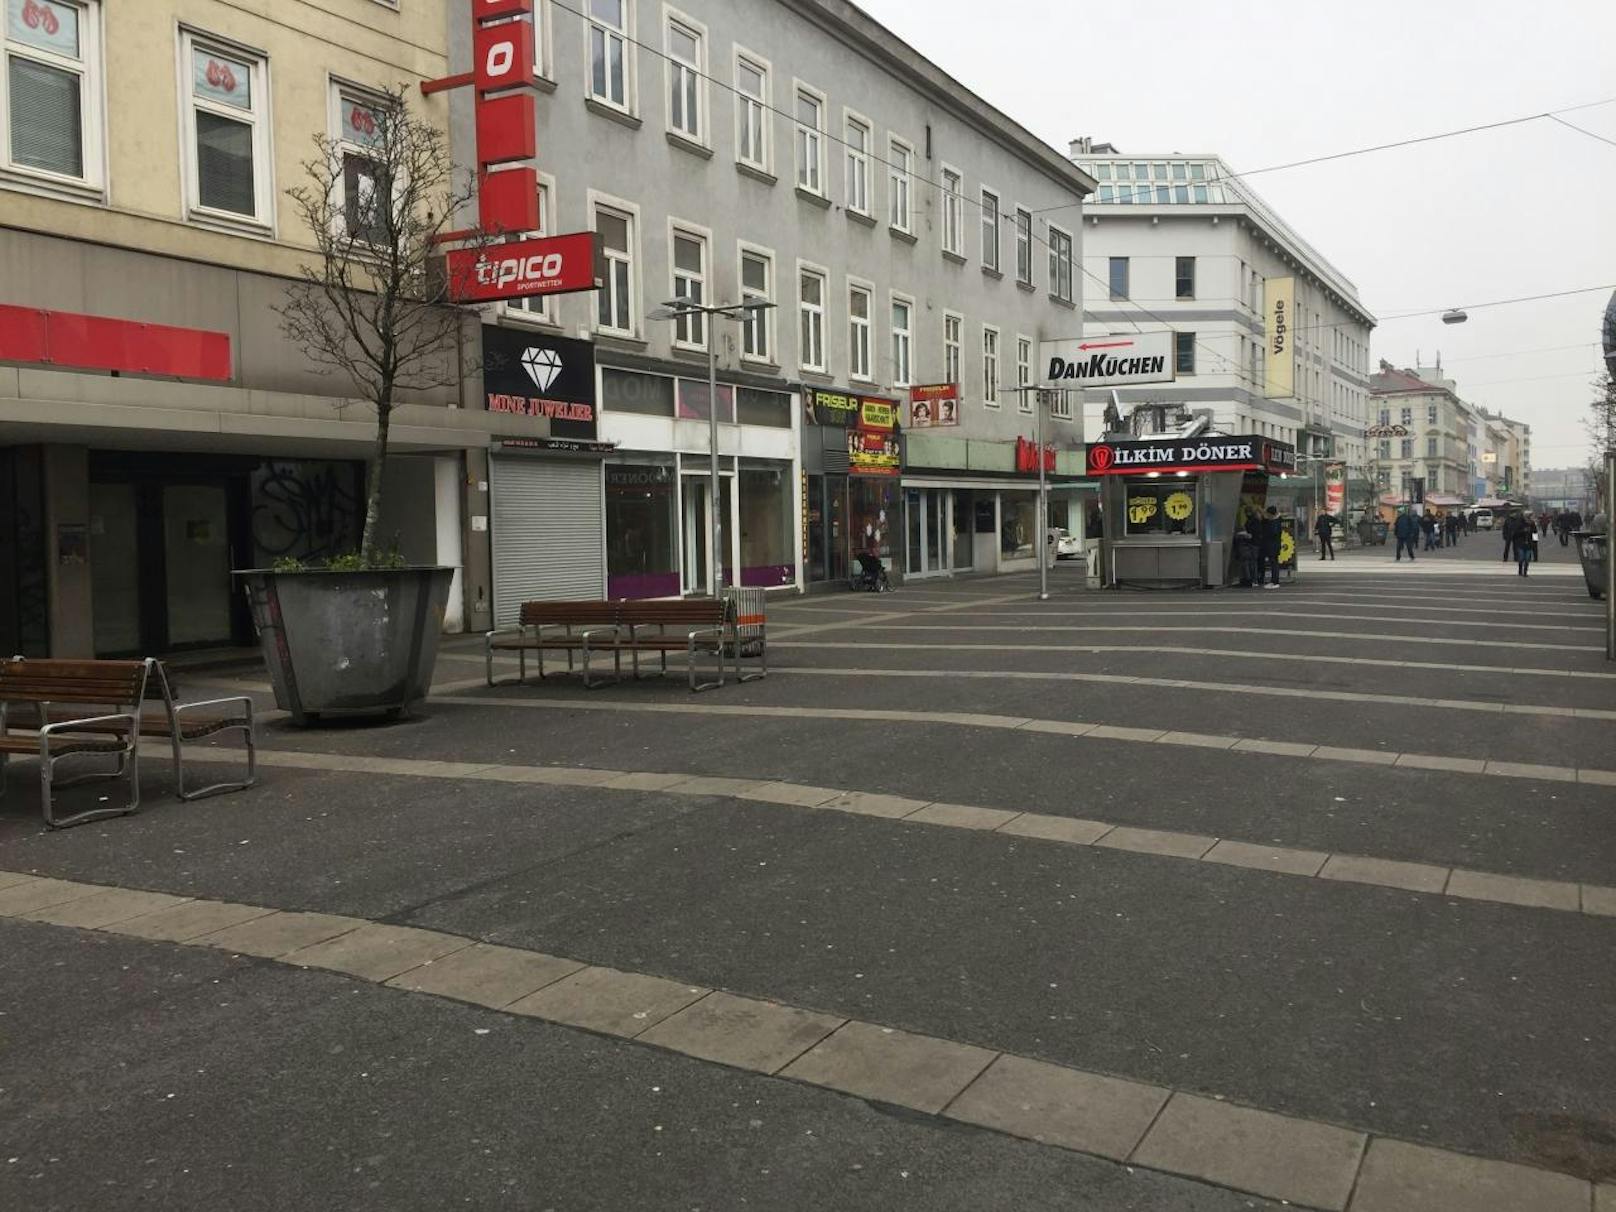 <b>Mann in Favoriten erstochen</b>
Anfang Dezember haben zwei unbekannte Täter einen 33-Jährigen in Wien auf offener Straße angegriffen und tödlich verletzt. Der Mann war in Gesellschaft seiner 44-jährigen Begleiterin, einer Kroatin, gegen 22.10 Uhr auf der Favoritenstraße zu Fuß unterwegs, als zwei schwarz bekleidete Männer auf sie zuliefen und begannen, wortlos auf den 33-Jährigen einzuschlagen. Die Frau wurde nicht körperlich attackiert. "Sie sagte aus, dass sie mit ihrem Bekannten spazieren war", so Polizeisprecher Paul Eidenberger.
Die Hintergründe der Tat sind noch völlig unklar. Dem Opfer wurden keine Wertgegenstände geraubt. Die Polizei ermittelt wegen Mordverdachts - und bittet um Hinweise unter 01/31310-33800.